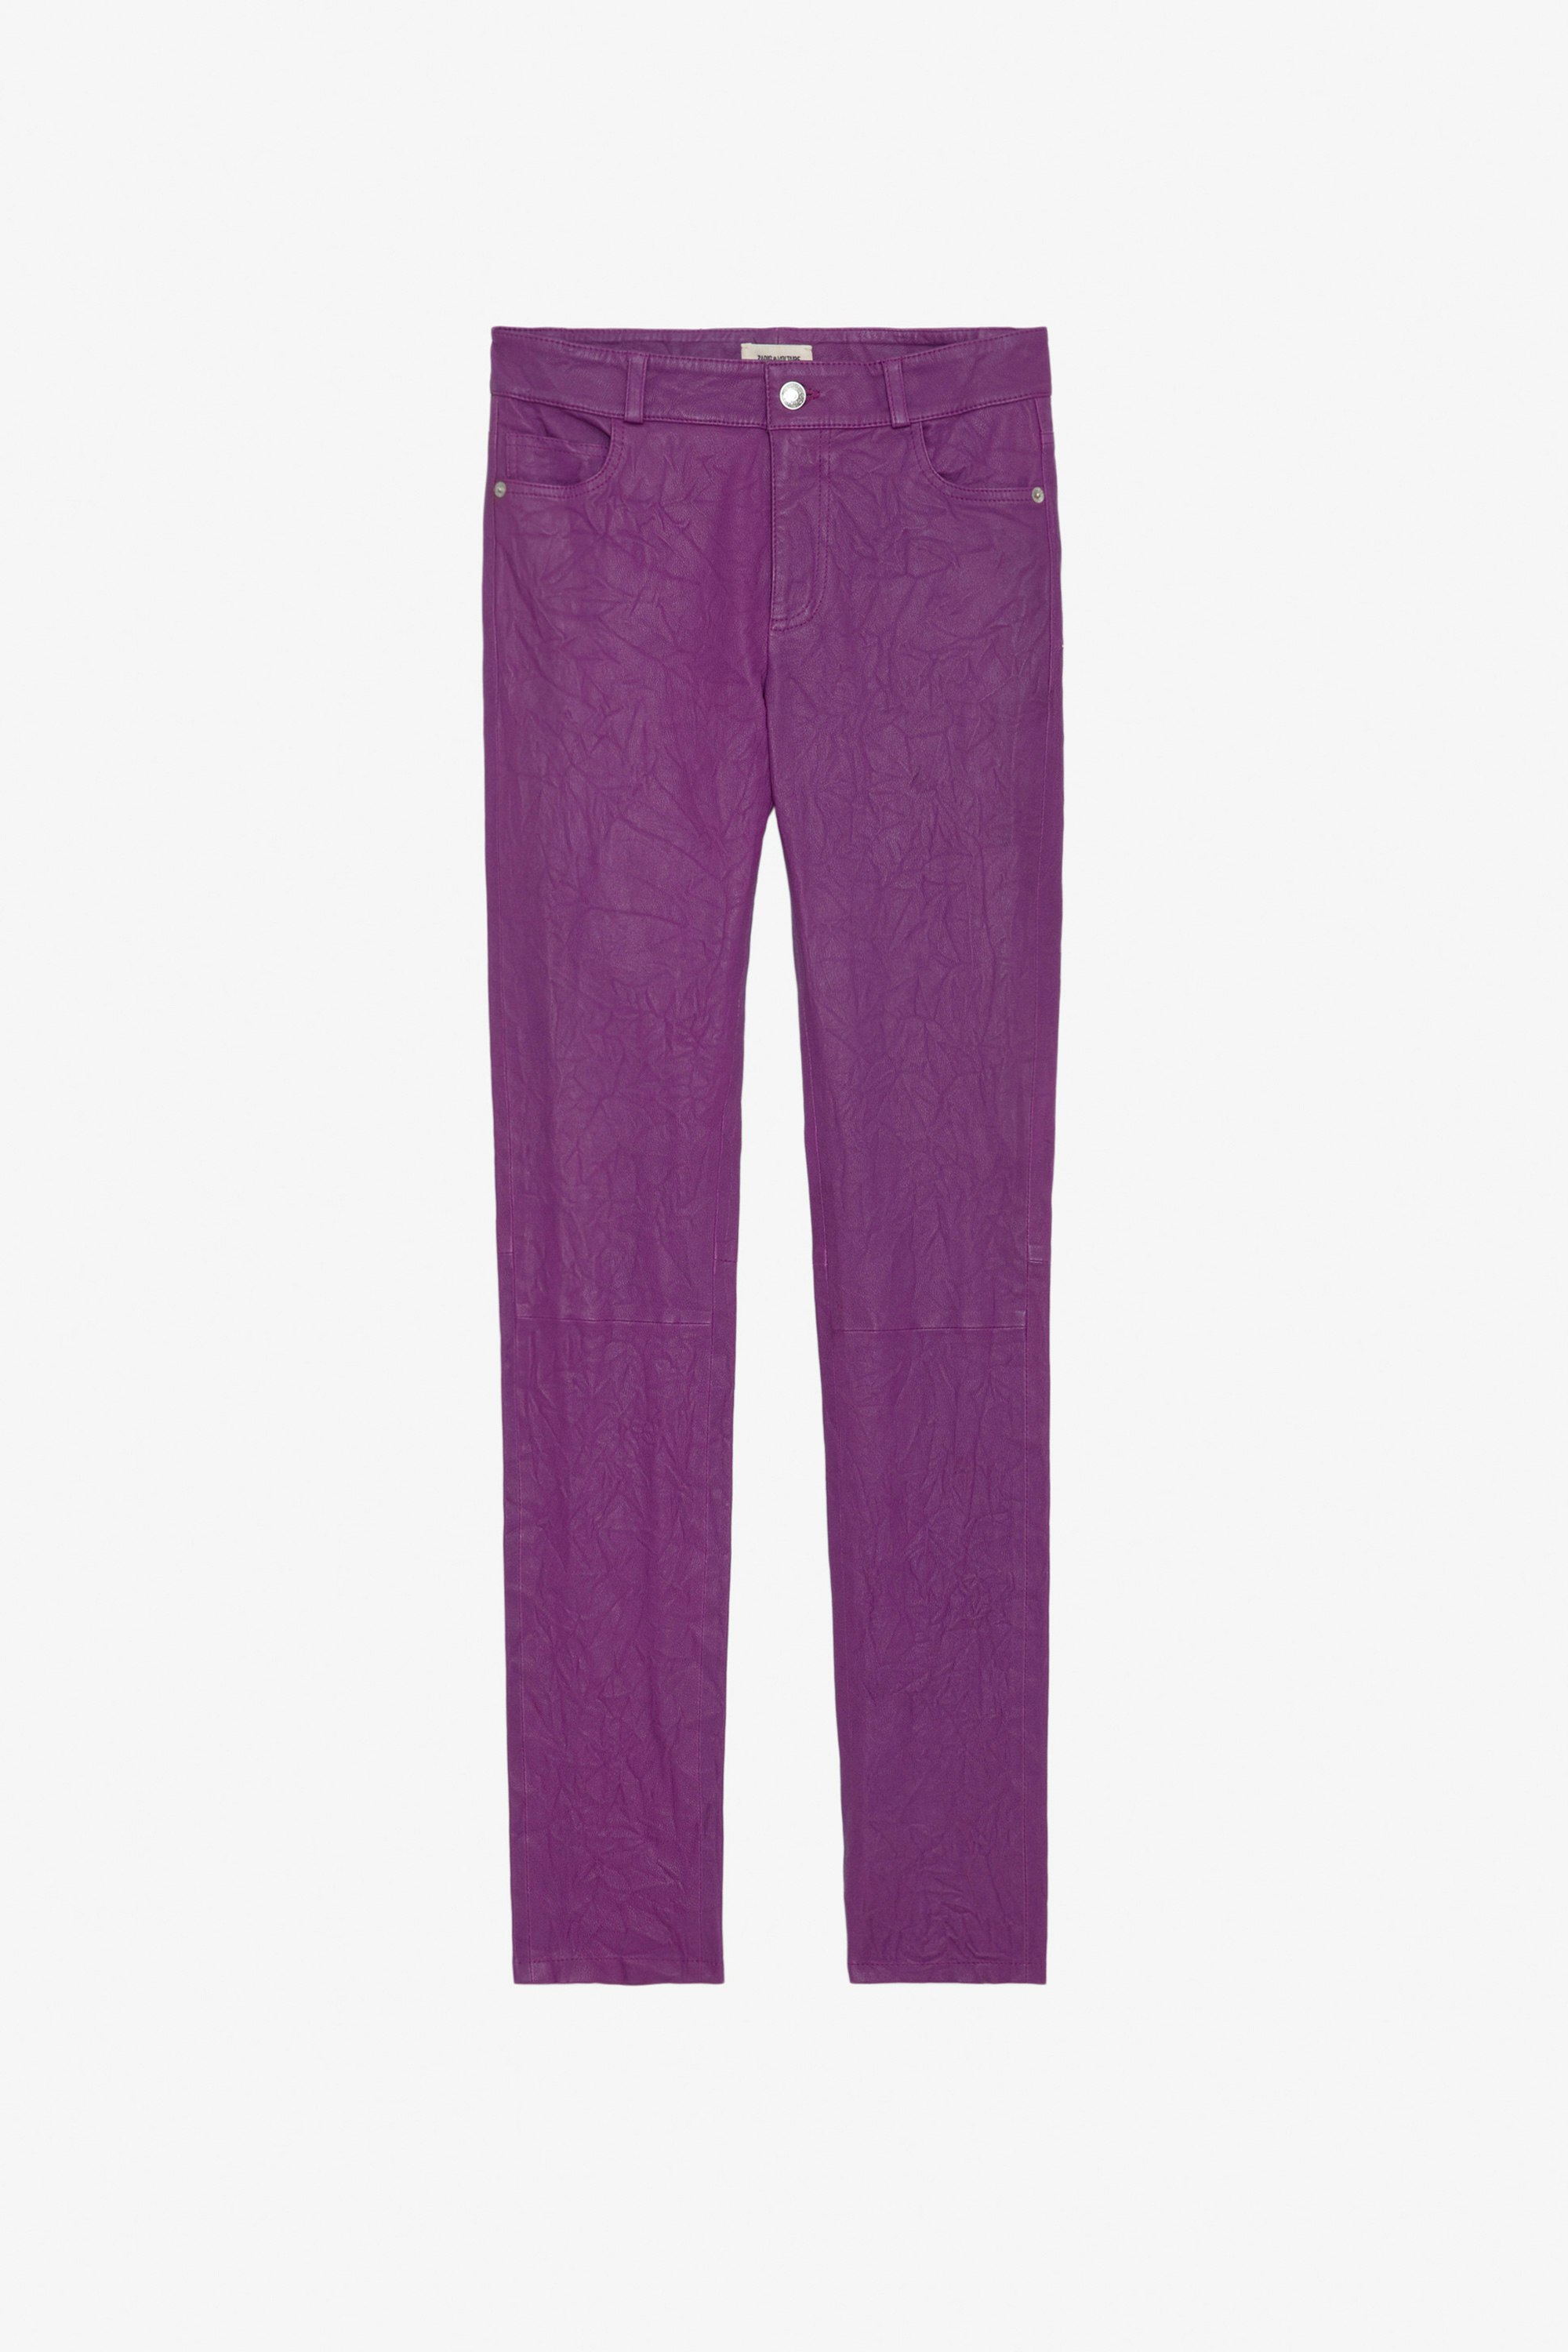 Hose Phlame Knitterleder - Hose aus Knitterleder mit Taschen in Violett.